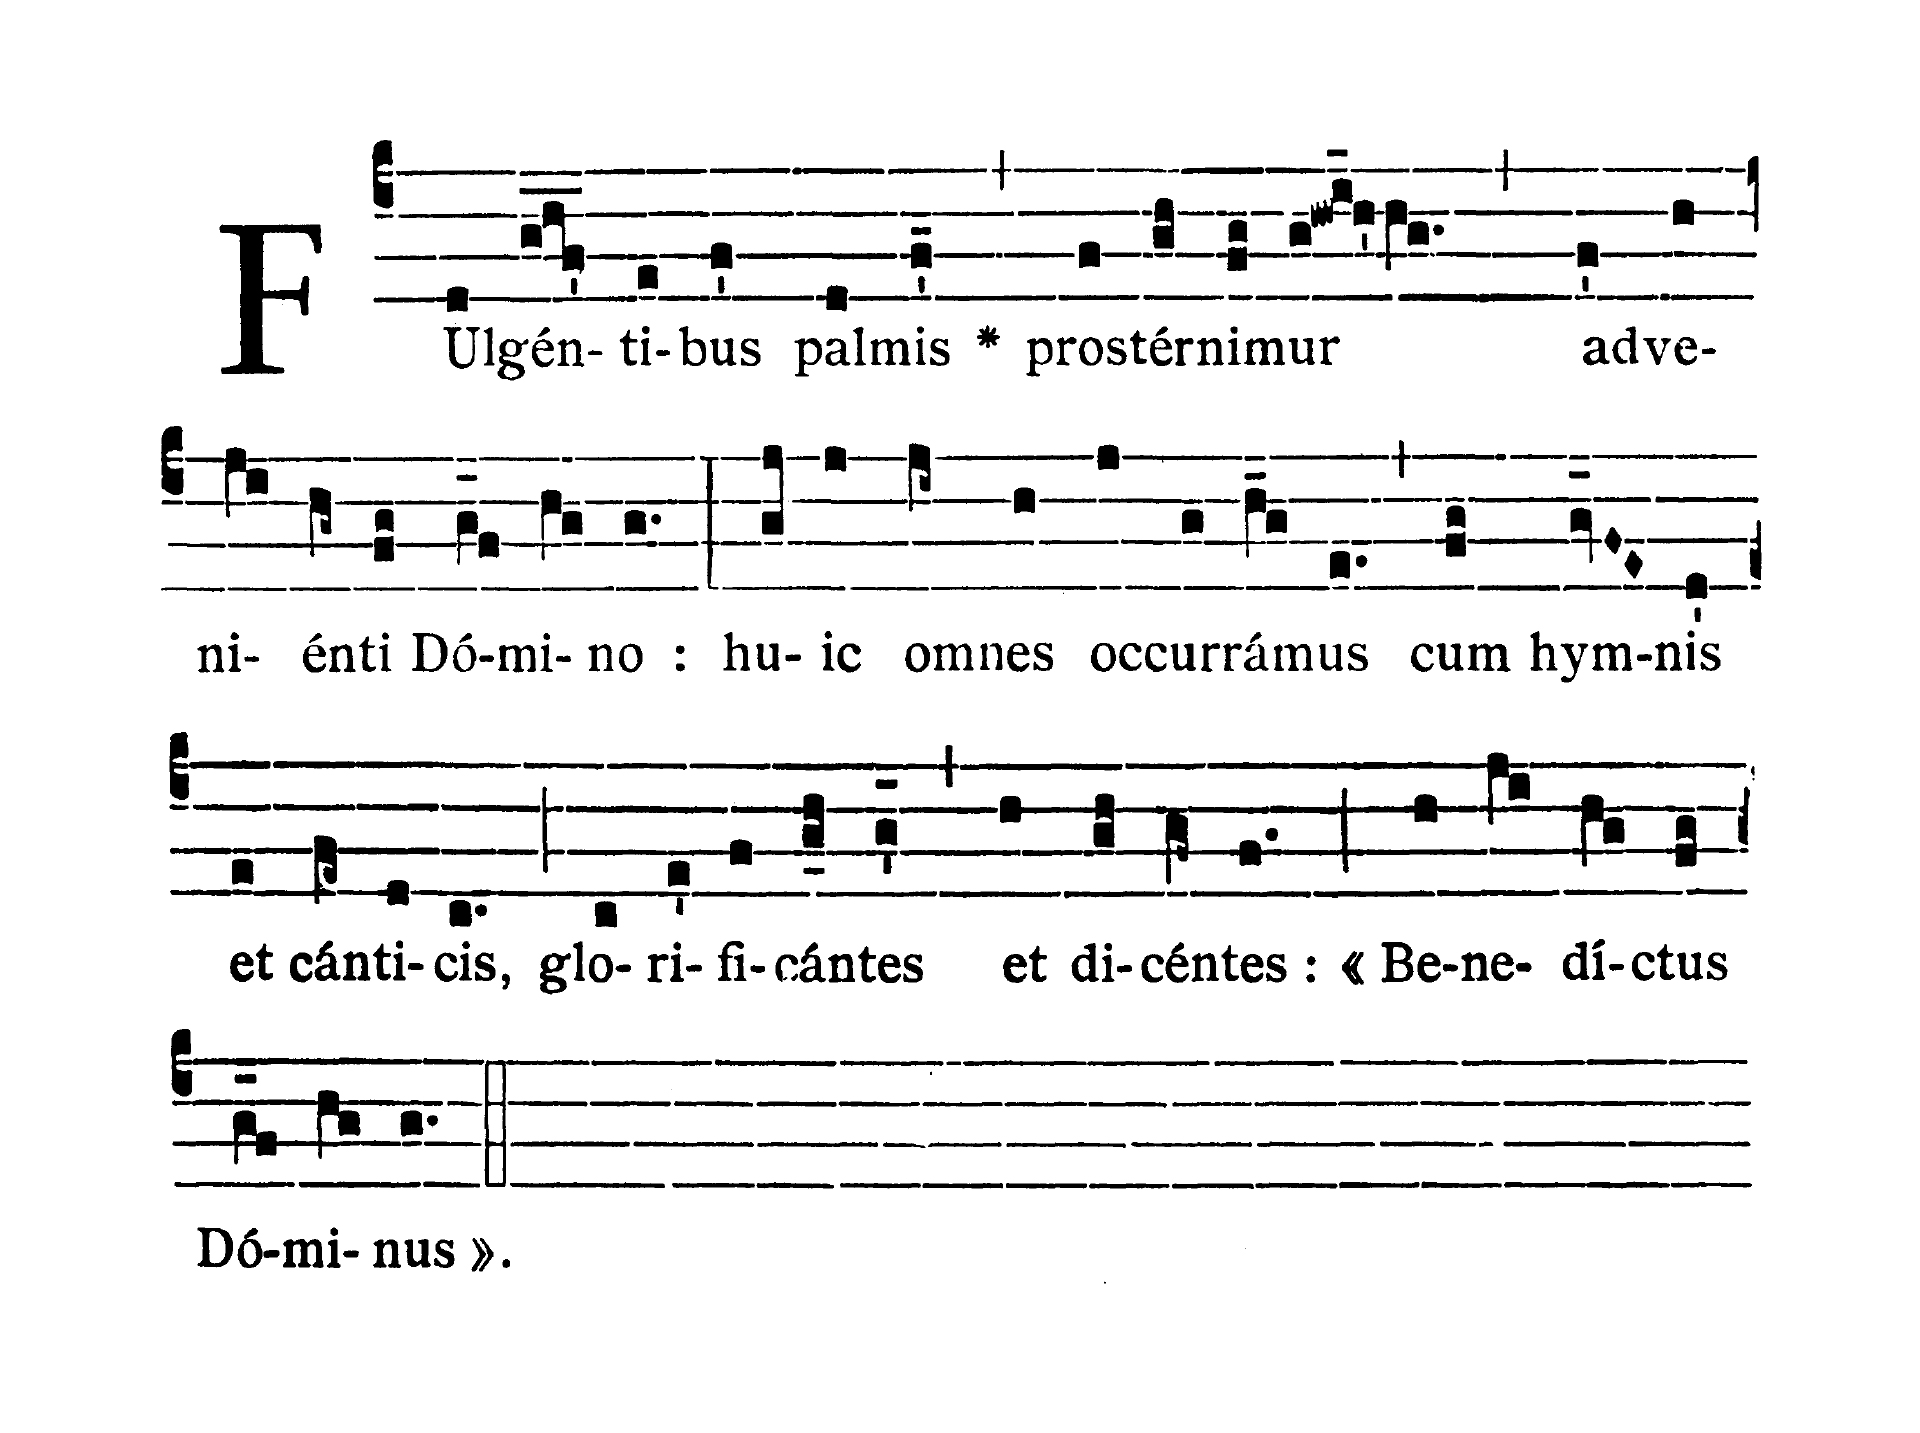 Dominica II in Passionis seu in Palmis (II Niedziela Męki Pańskiej lub Palmowa) - Antiphona (Fulgentibus palmis)